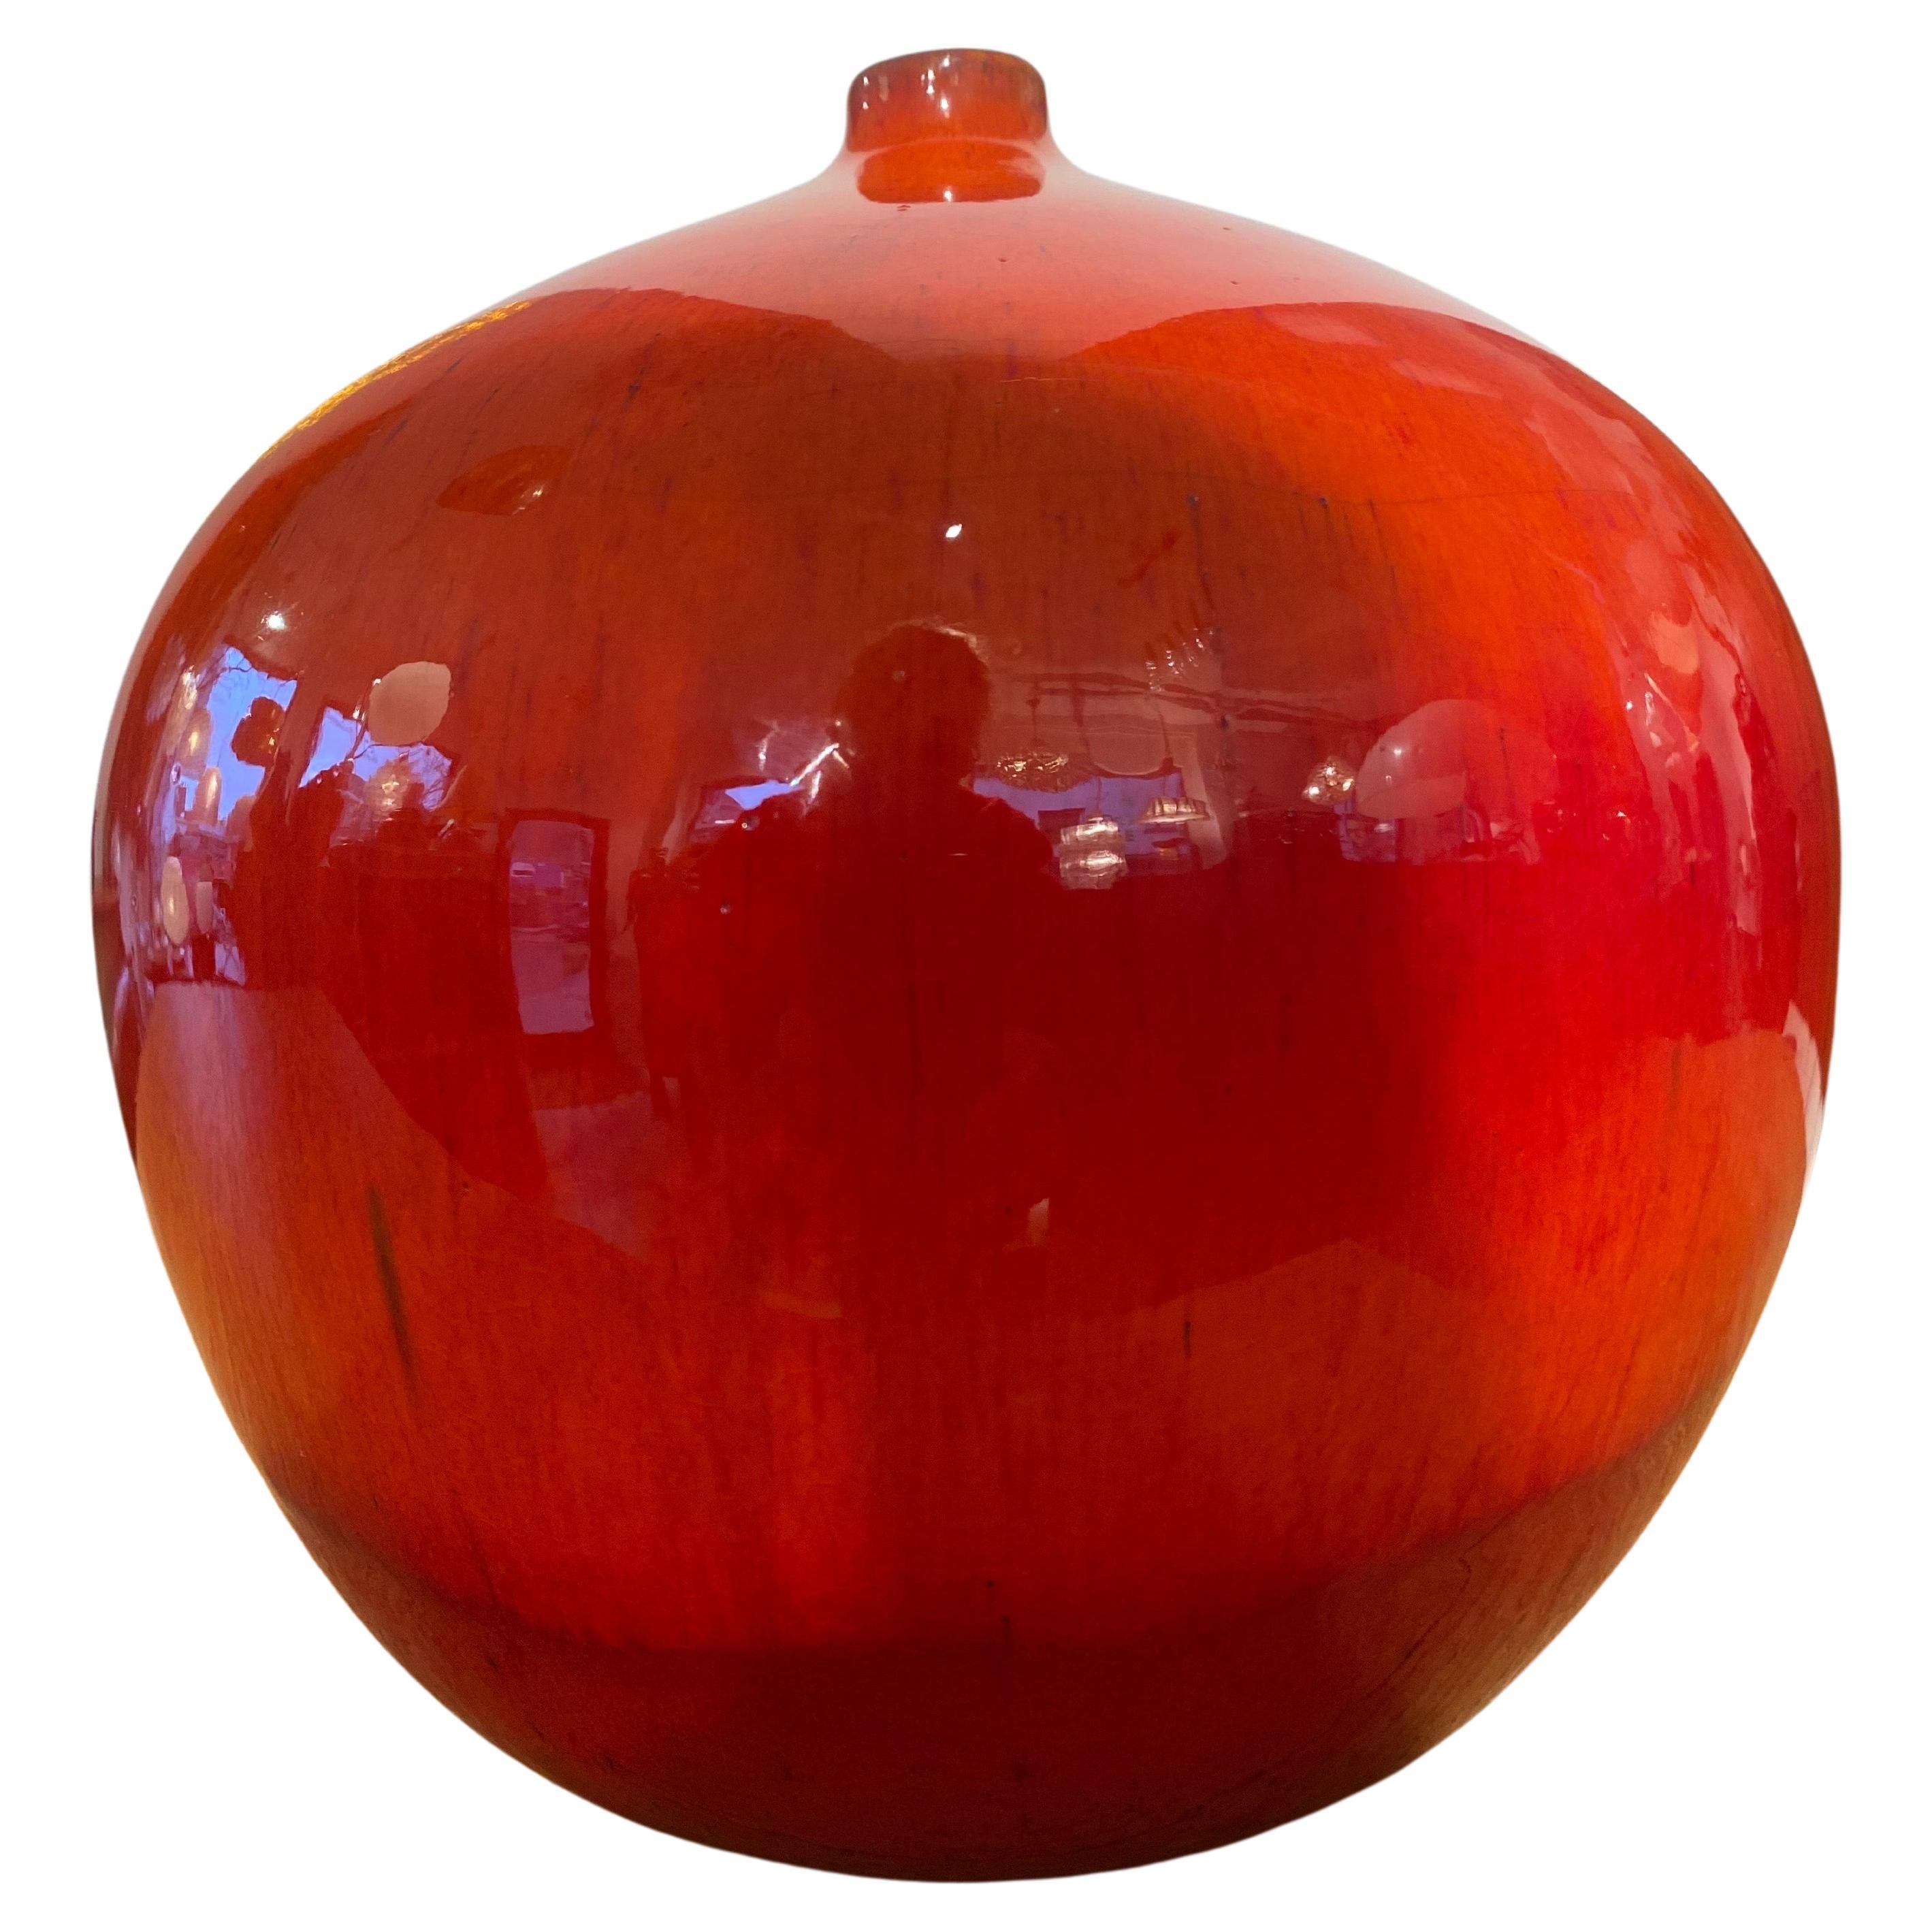 Wunderschöne, intensiv rot glasierte, handgedrehte Kugelvase mit Oxidationsbrand, entworfen von Rogier Vandeweghe und signiert von Perignem, Beernem, Belgien, 1960er Jahre, mit einer Markierung auf dem Boden. Diese Vase ist in perfektem Zustand.